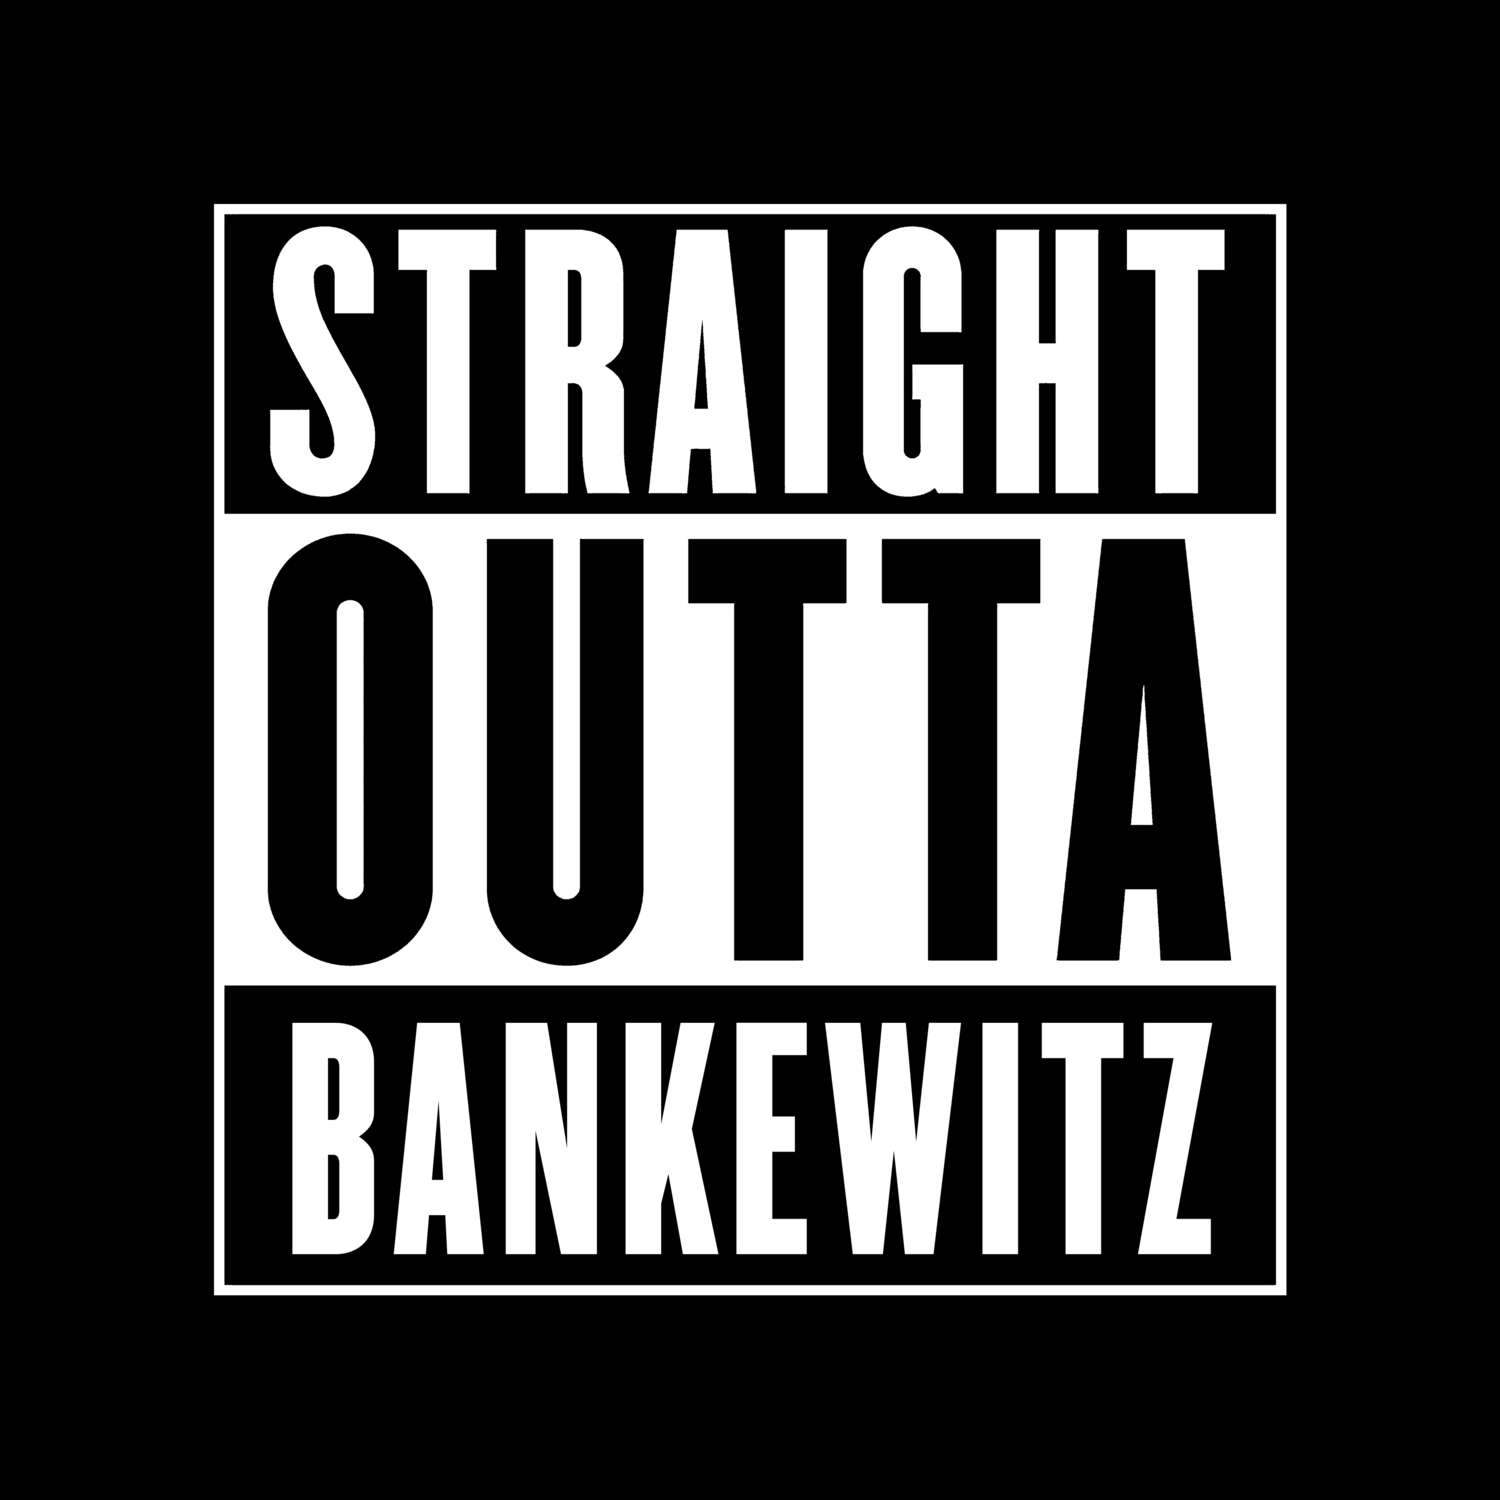 Bankewitz T-Shirt »Straight Outta«